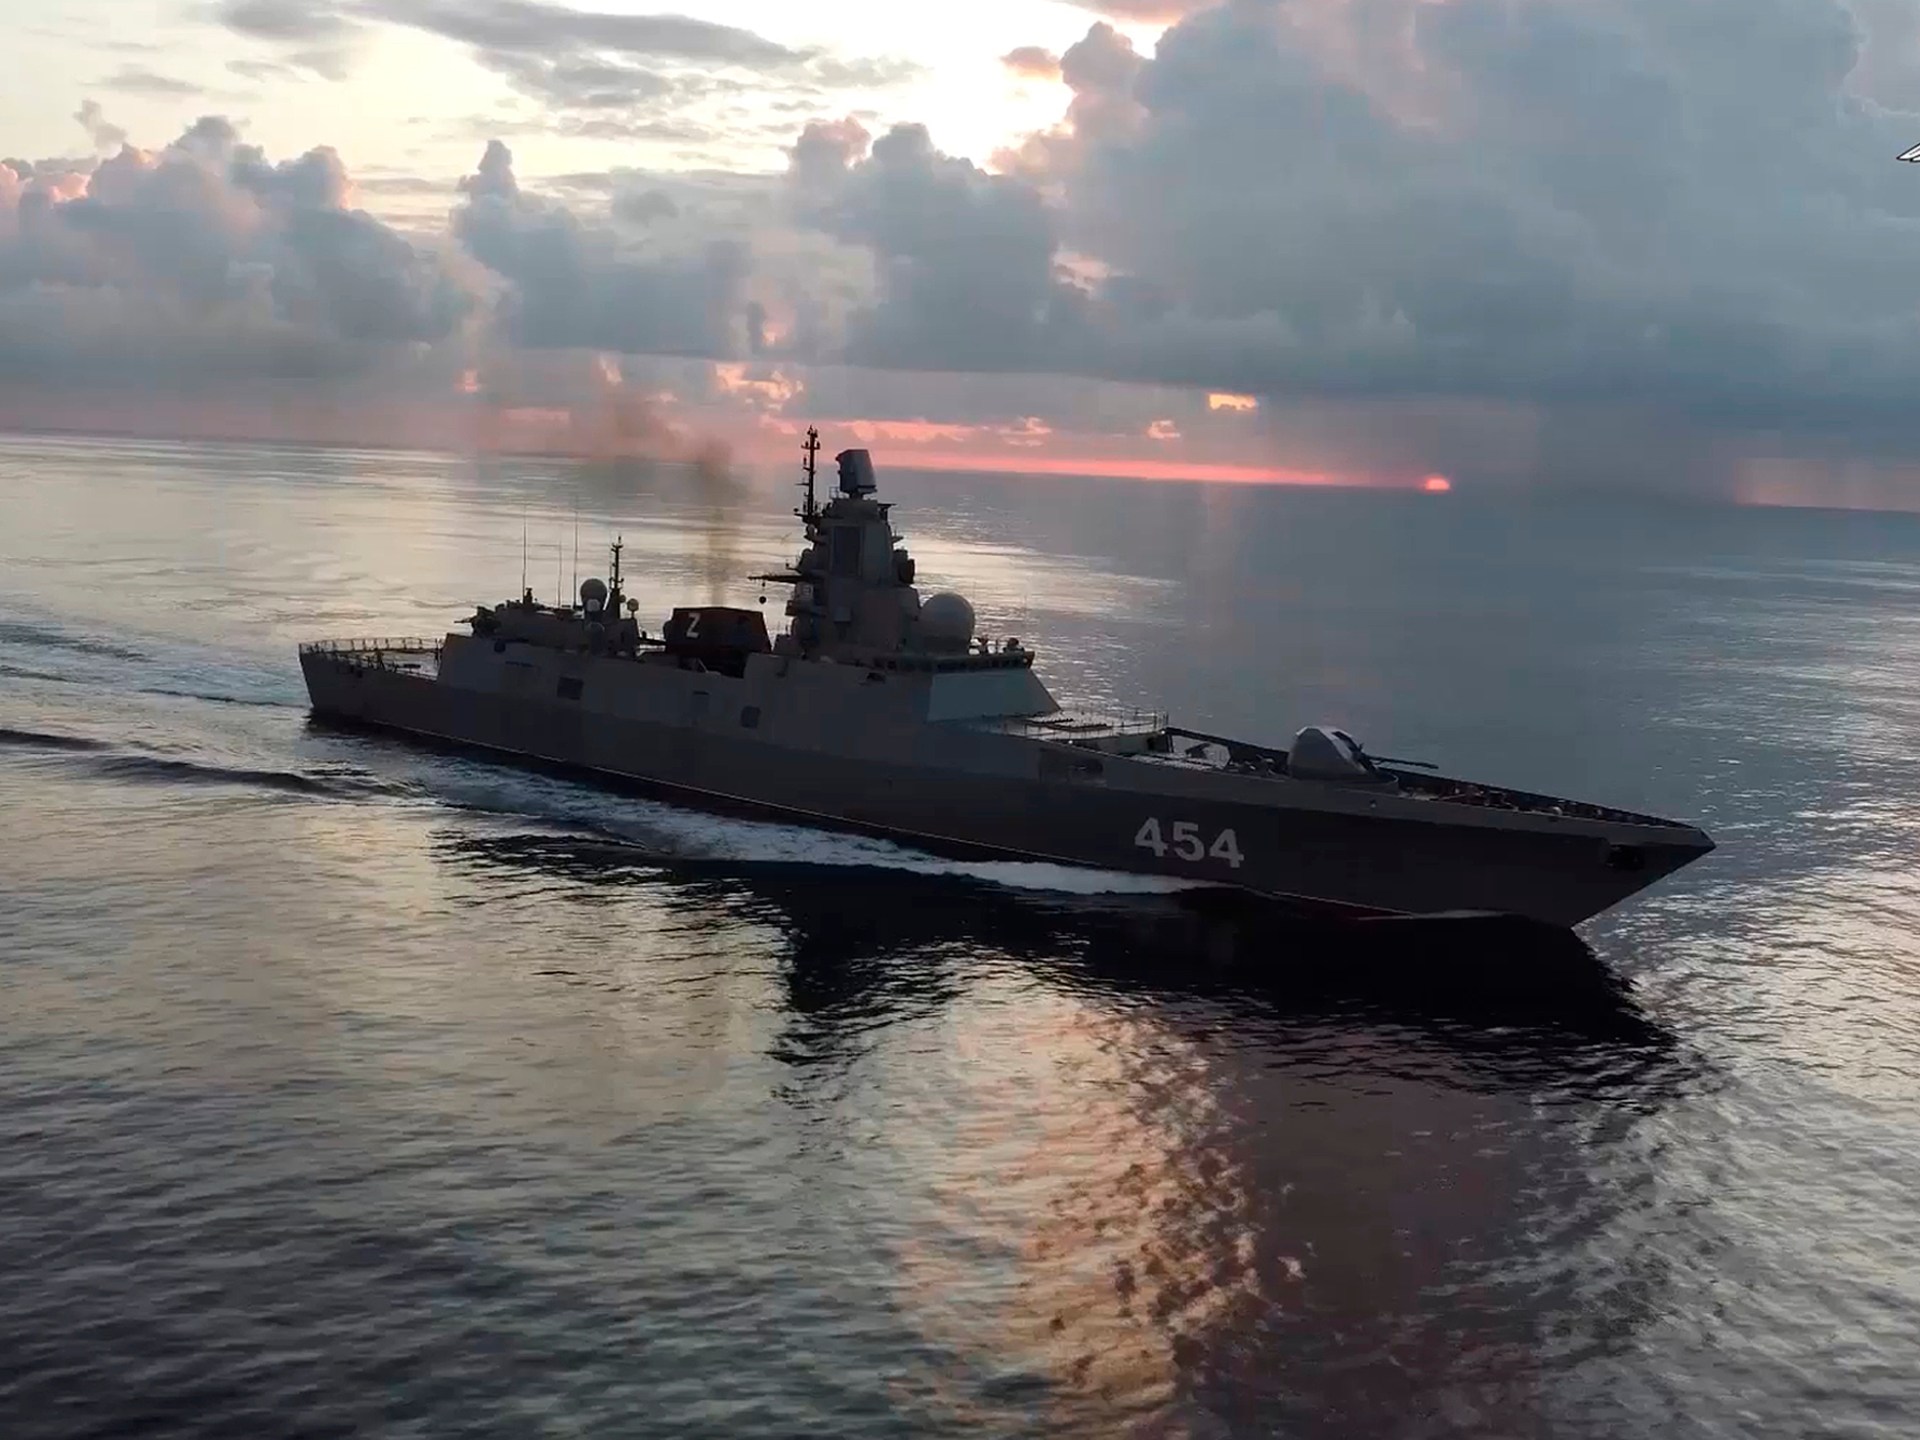 السفن الروسية تجري تدريبات صاروخية في المحيط الأطلسي في طريقها إلى كوبا |  الأخبار العسكرية